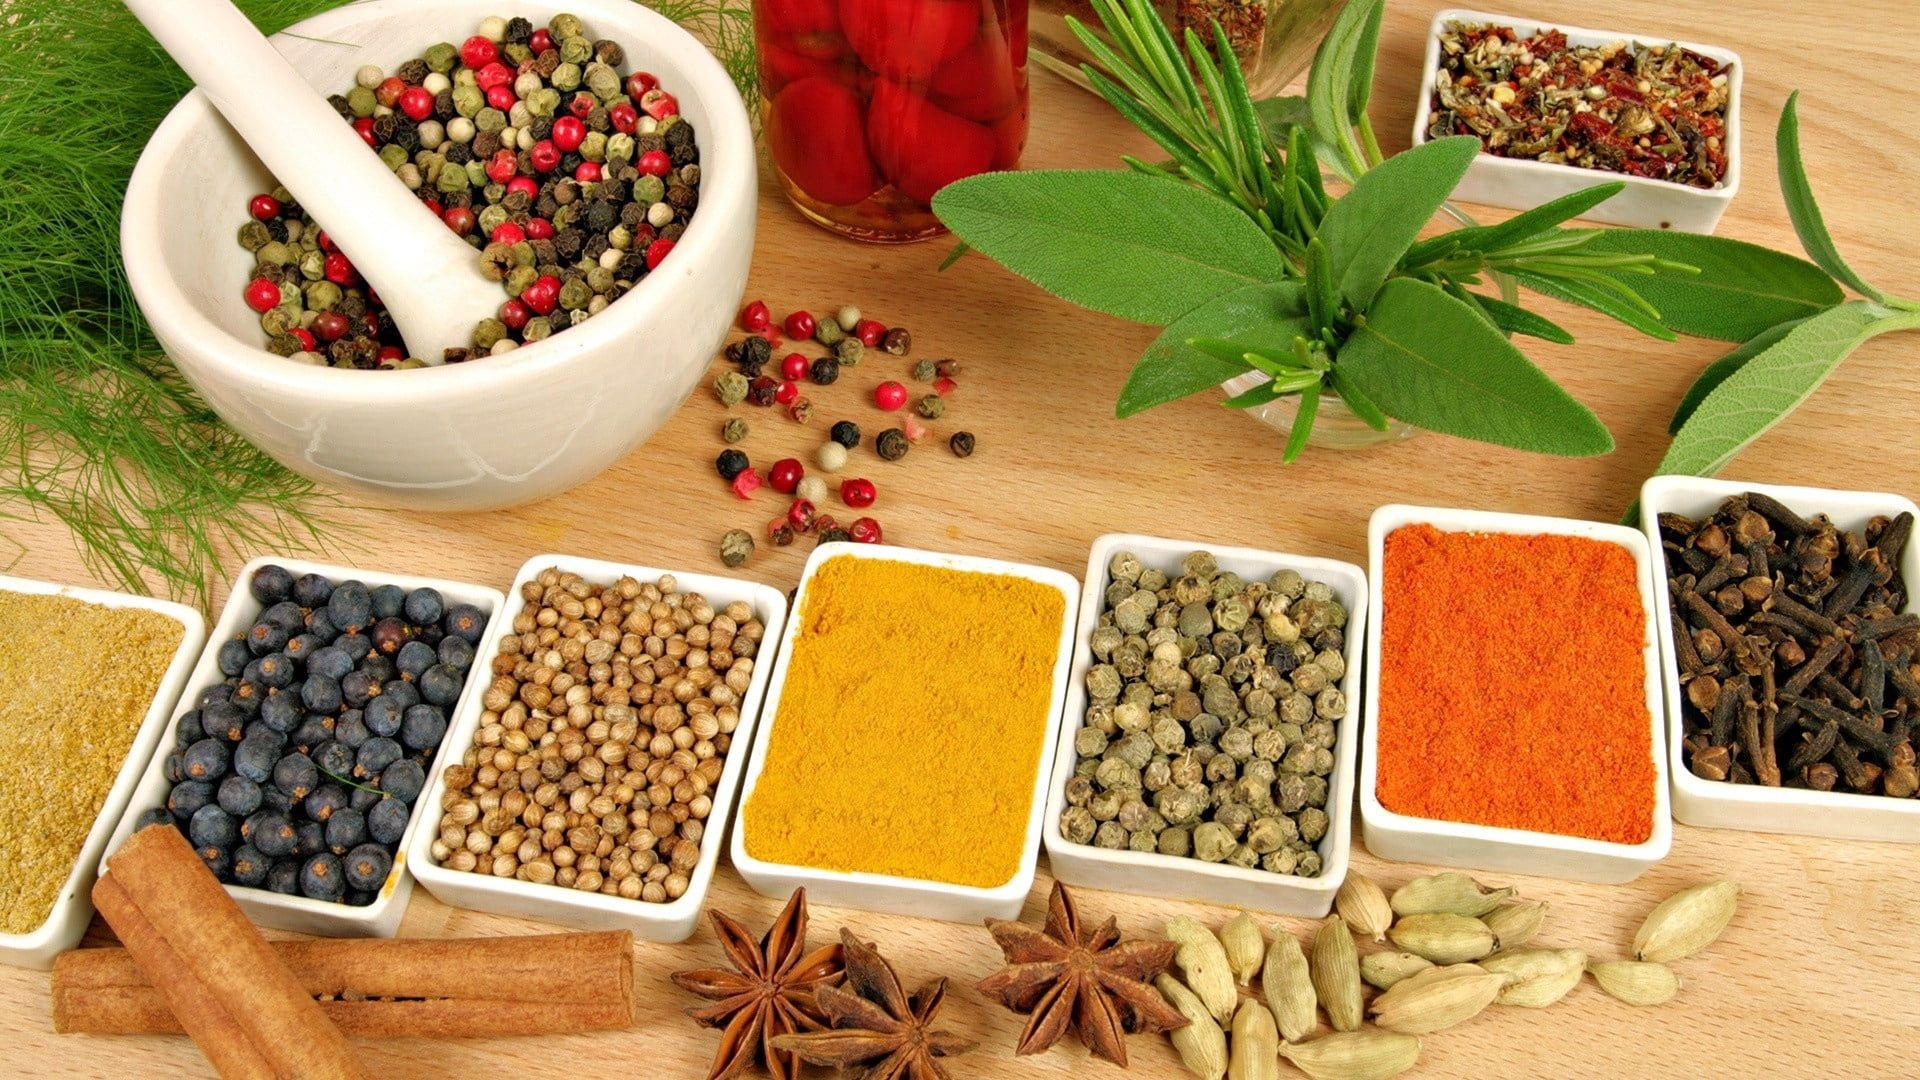 Food seasoning, Ayurvedic herbs, Healthy foods, Nourishing choices, 1920x1080 Full HD Desktop